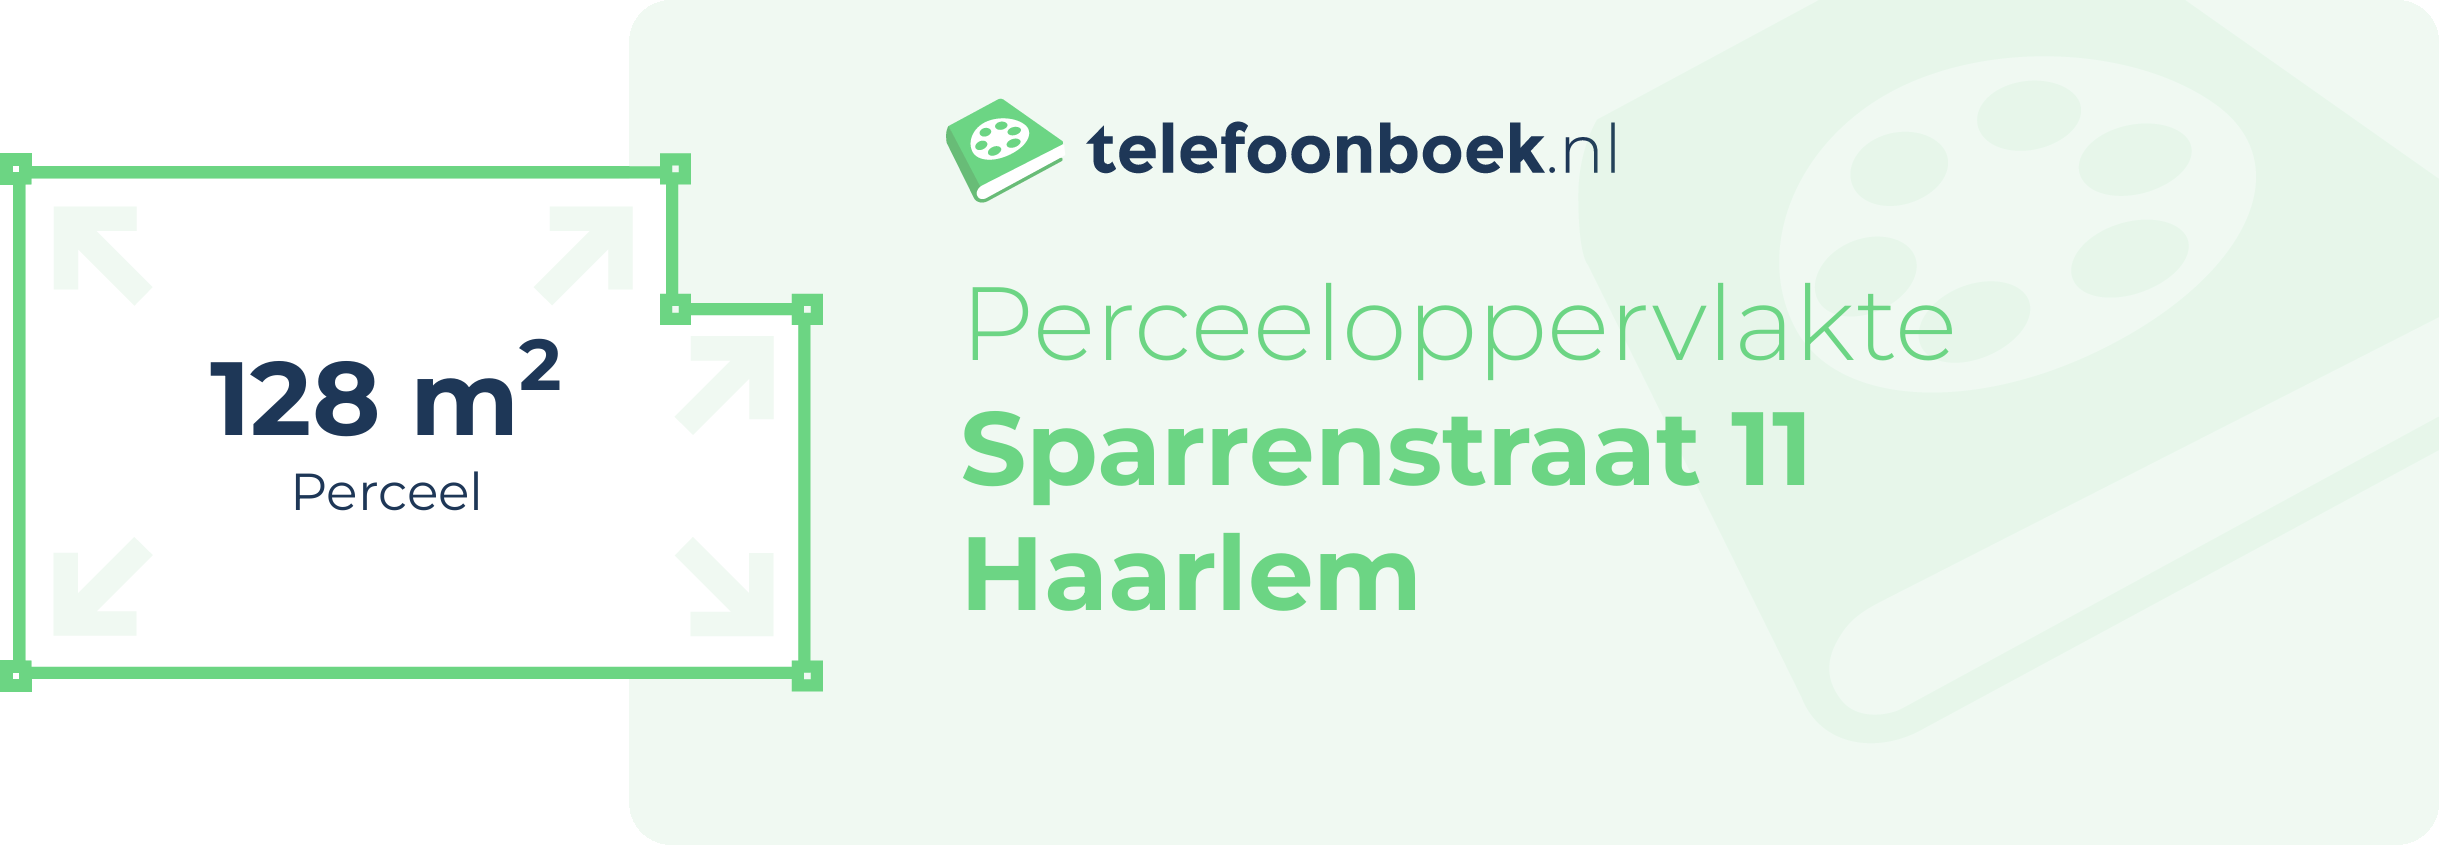 Perceeloppervlakte Sparrenstraat 11 Haarlem